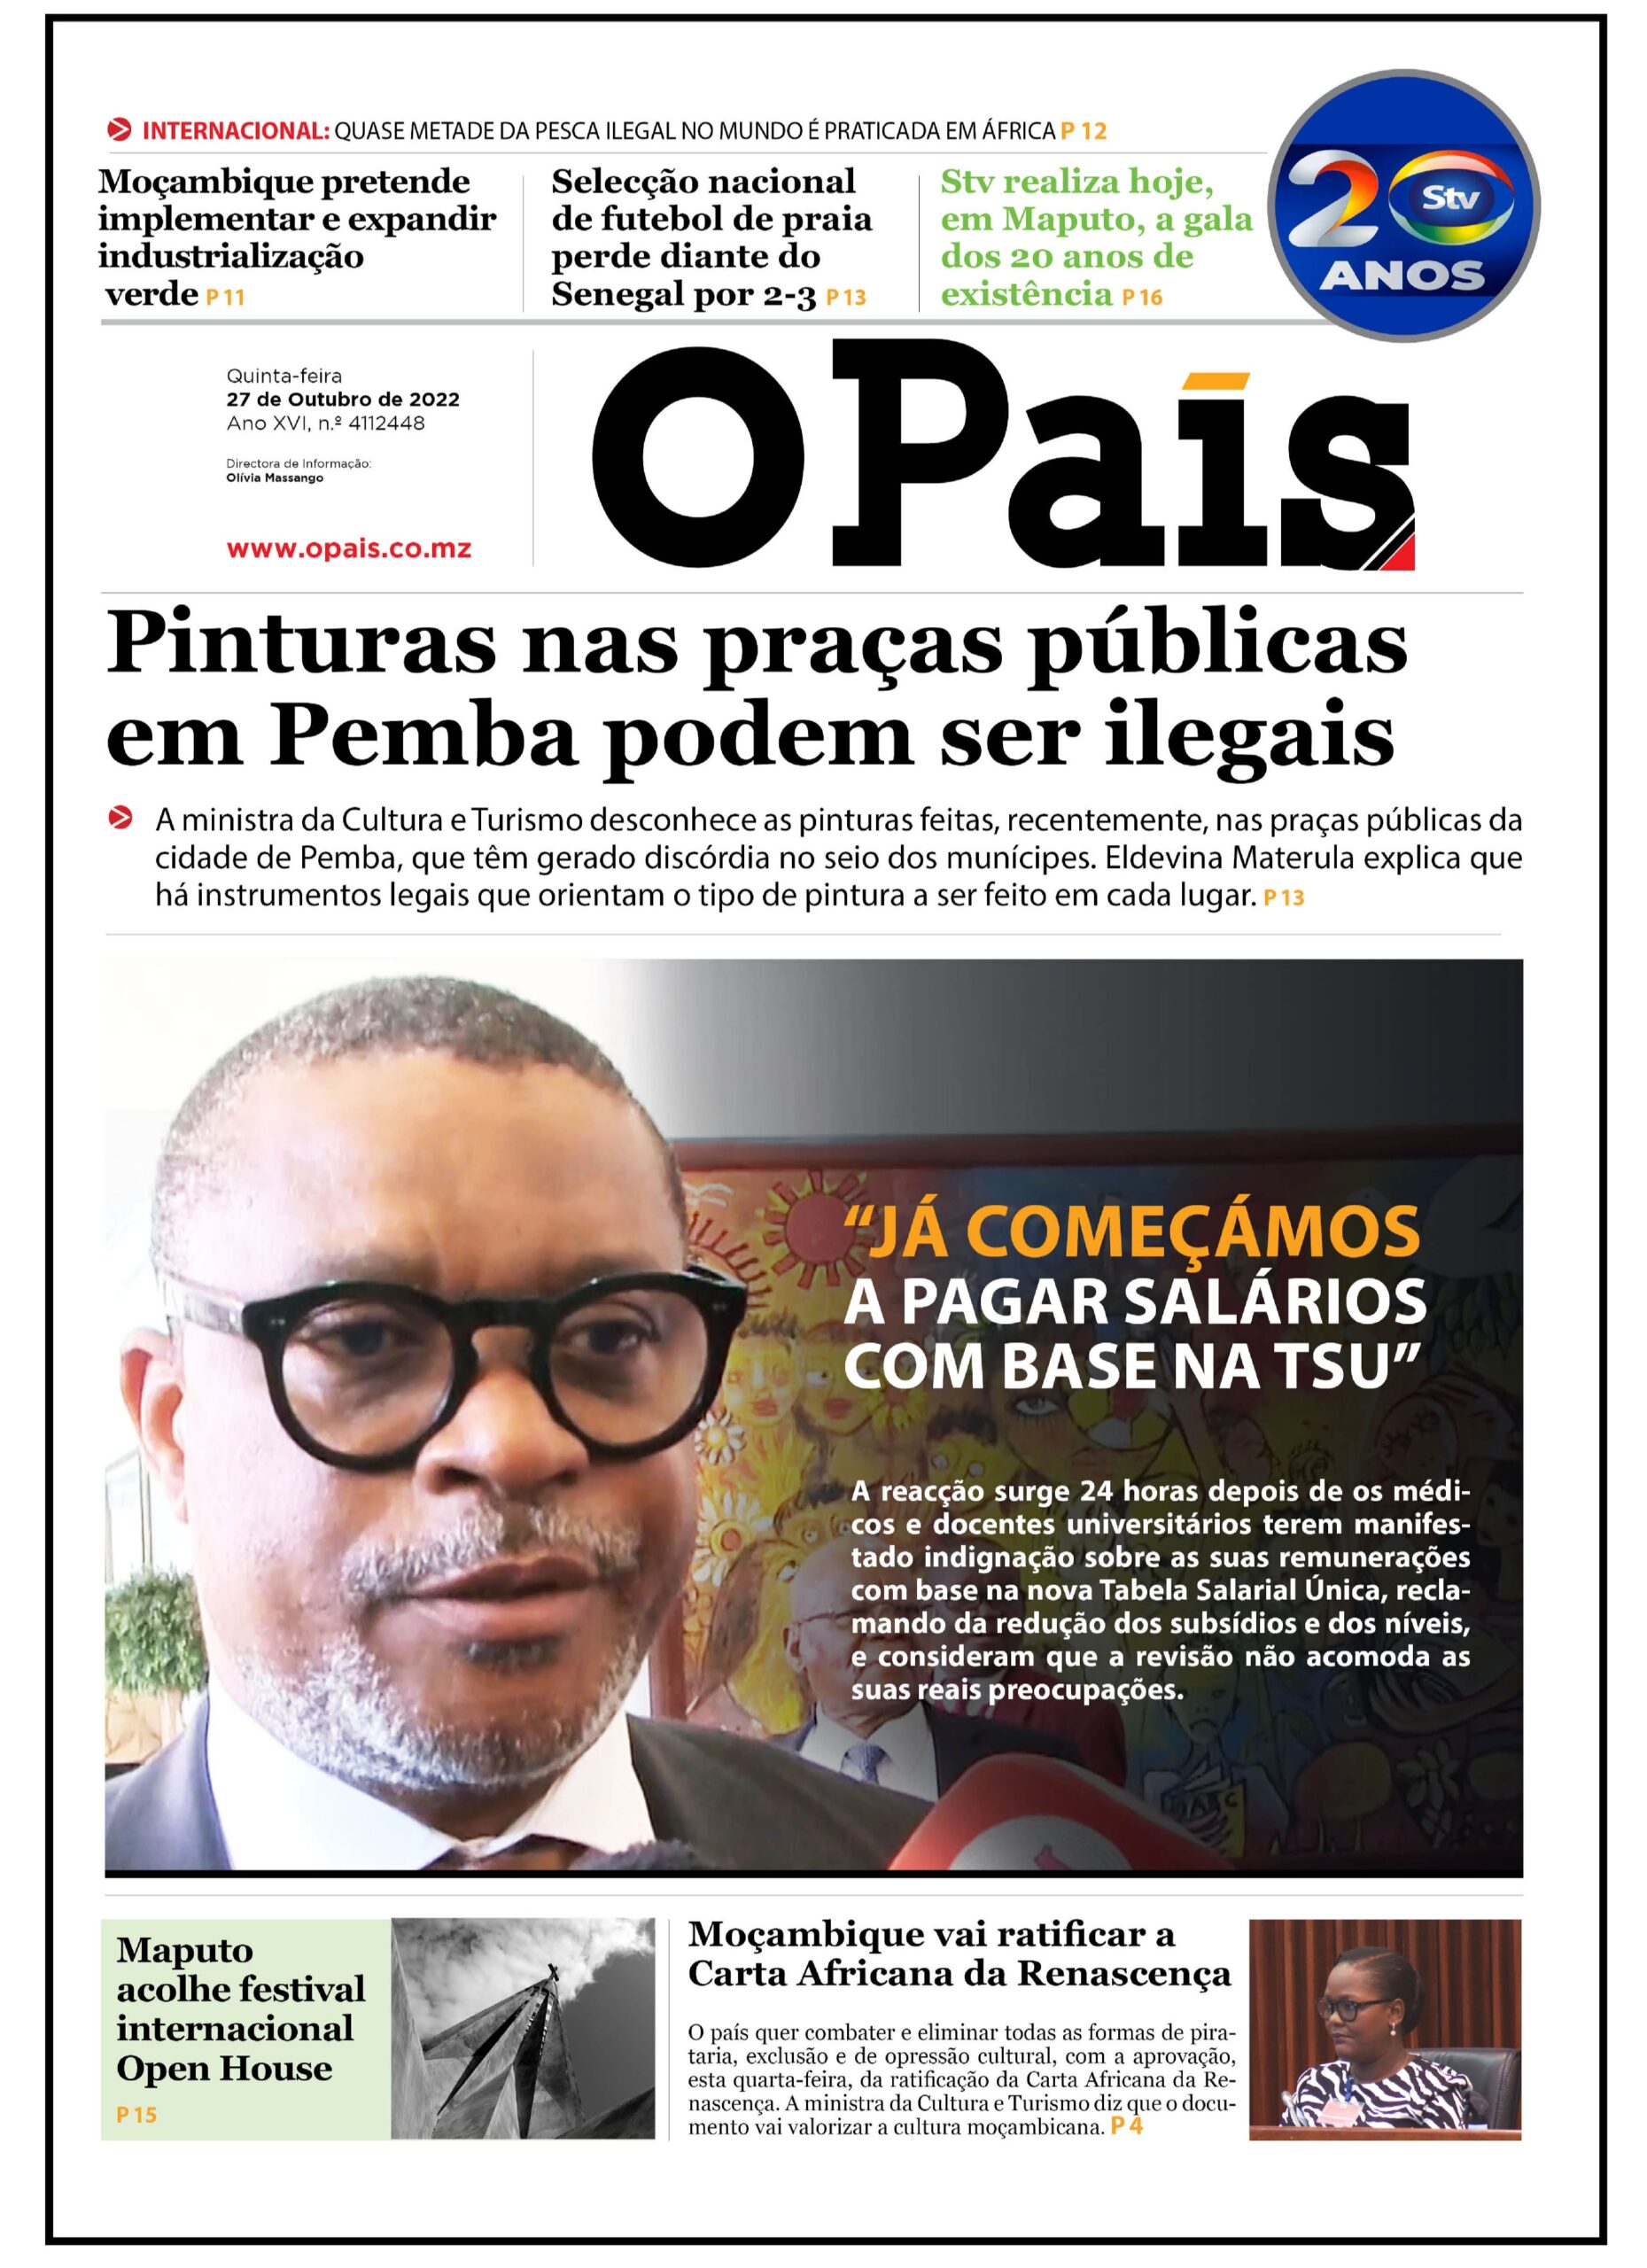 Capa Do Jornal Diário 27102022 O País A Verdade Como Notícia 3909